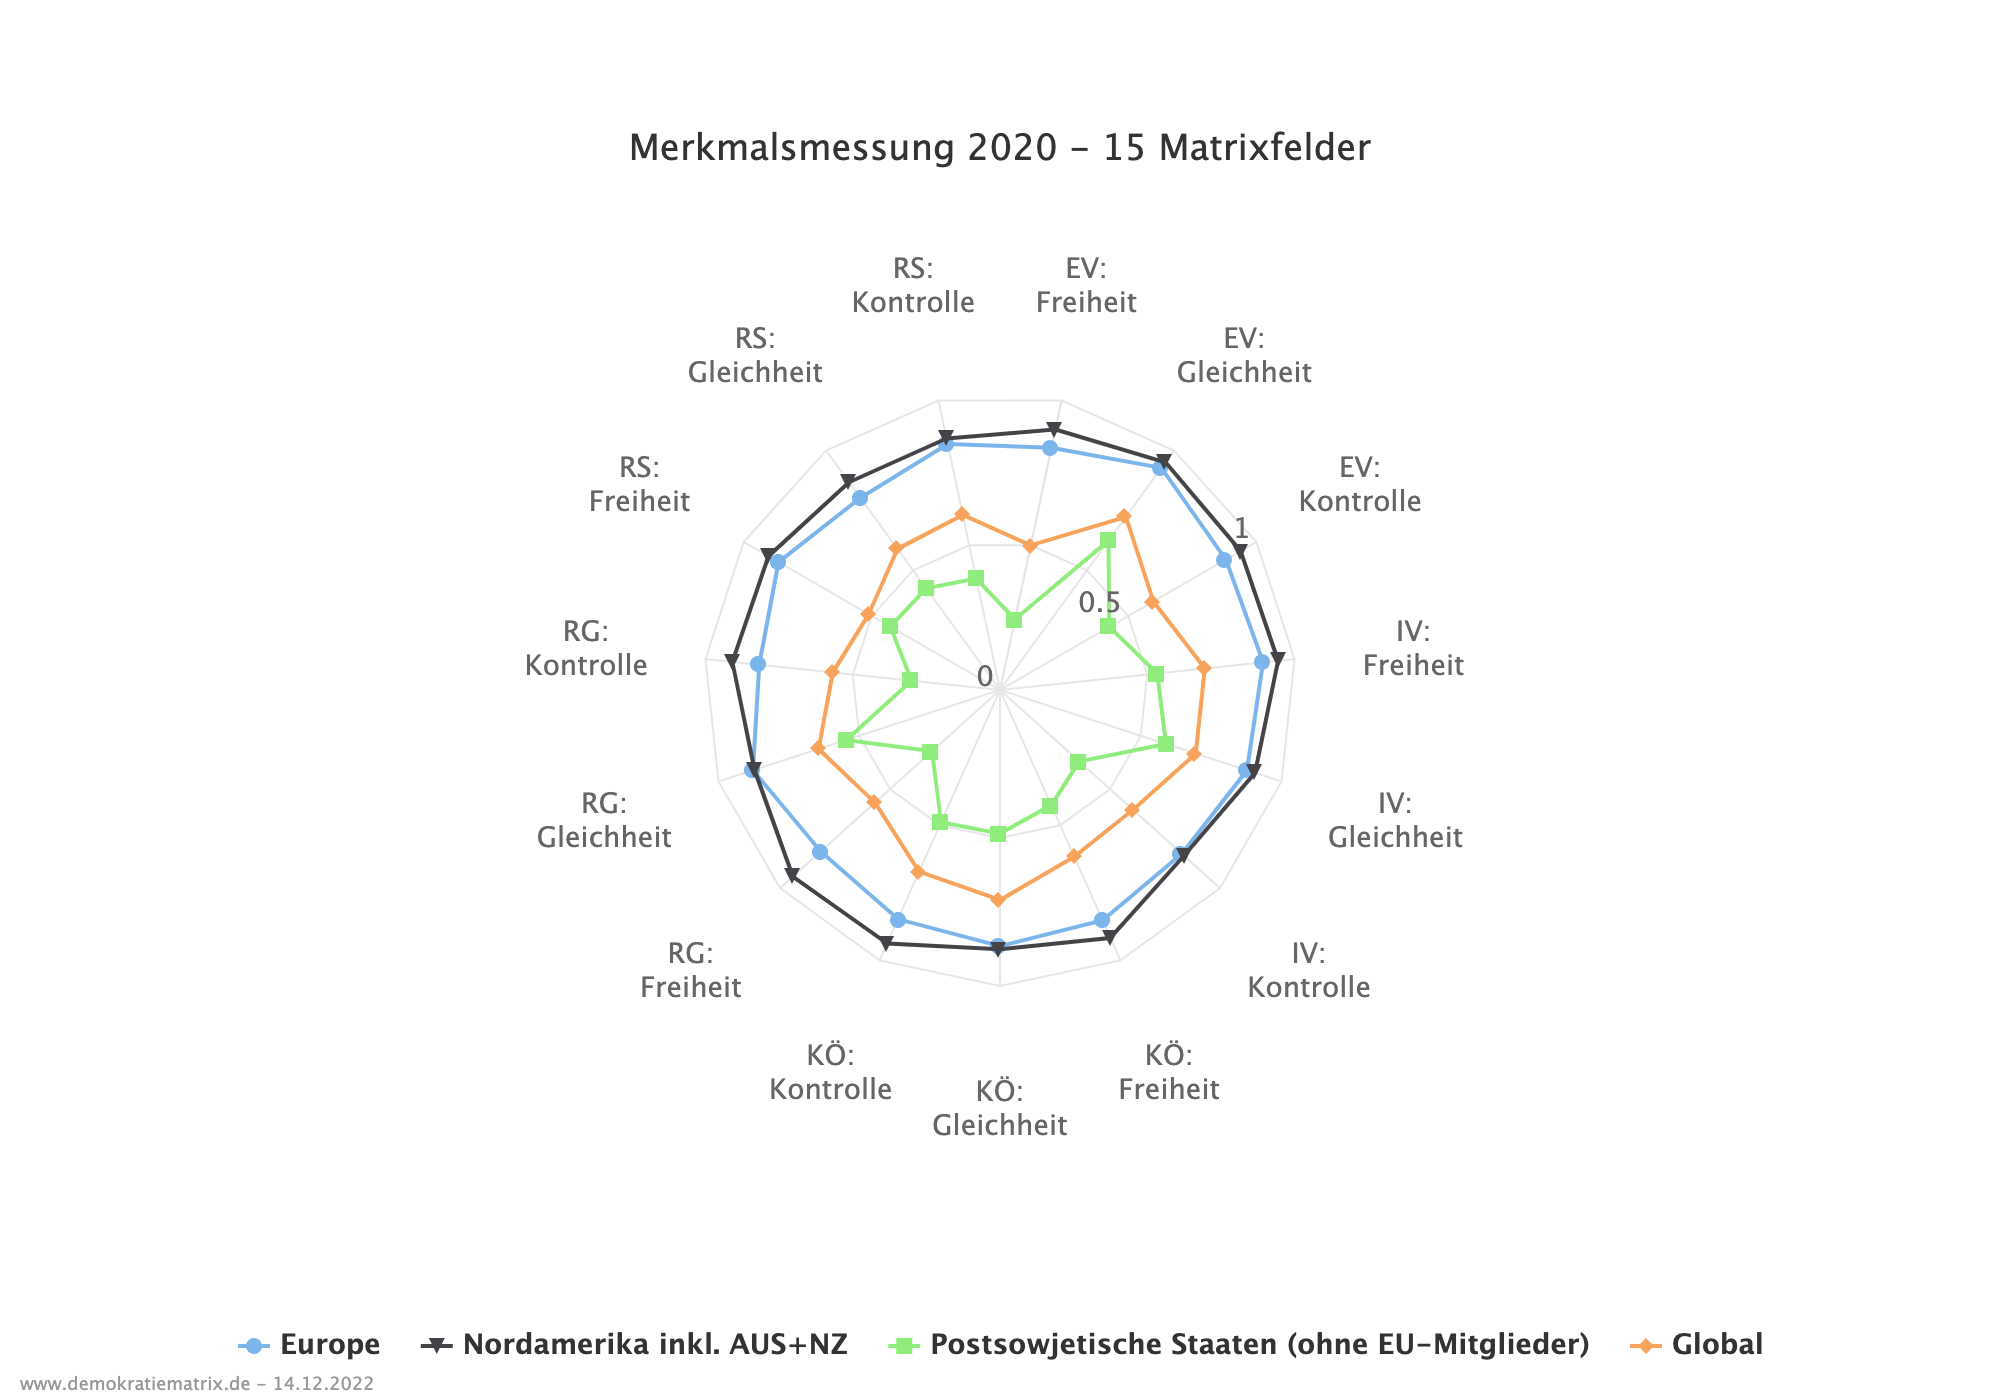 Netzdiagramm über Merkmalsmessung verschiedener Matrikelemente aus dem Jahr 2020